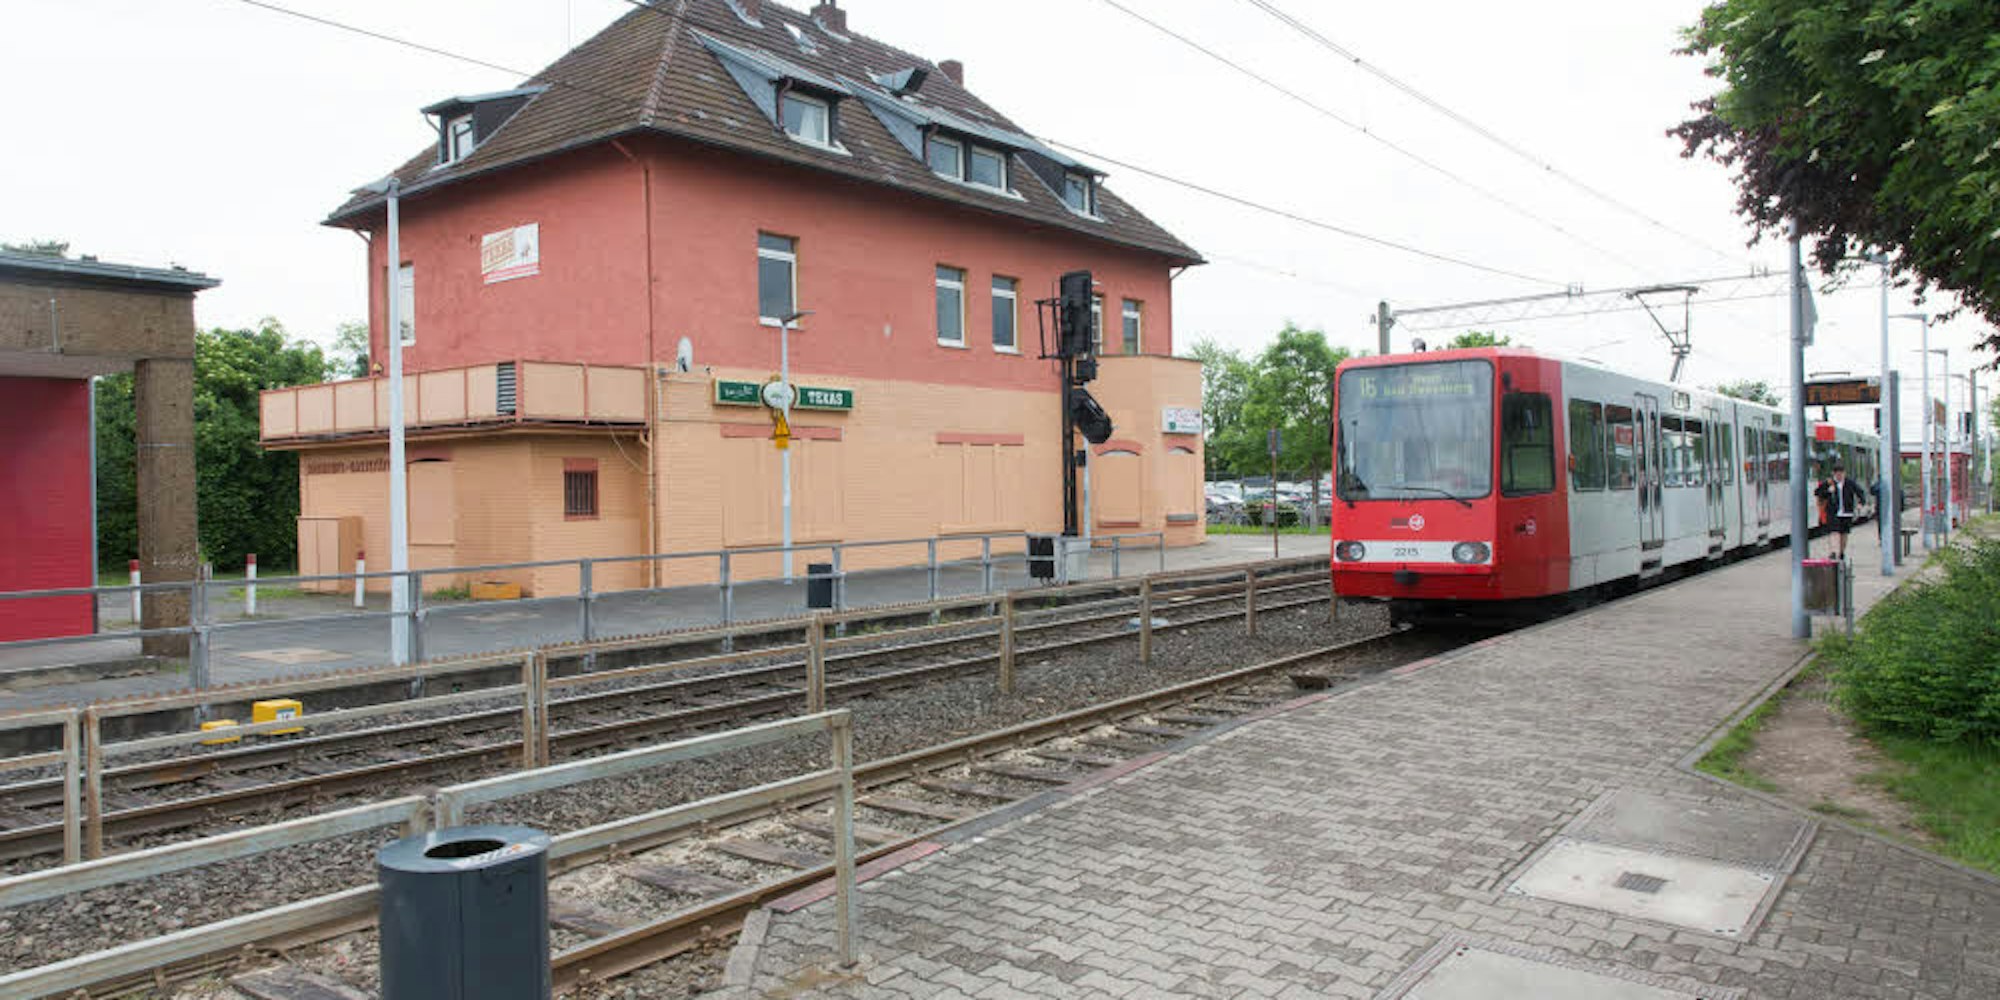 Die Haltestellen in Hersel, Uedorf und Widdig müssen so schnell wie möglich umgebaut werden, fordert der Bornheimer Bürgermeister. (Archivfoto)